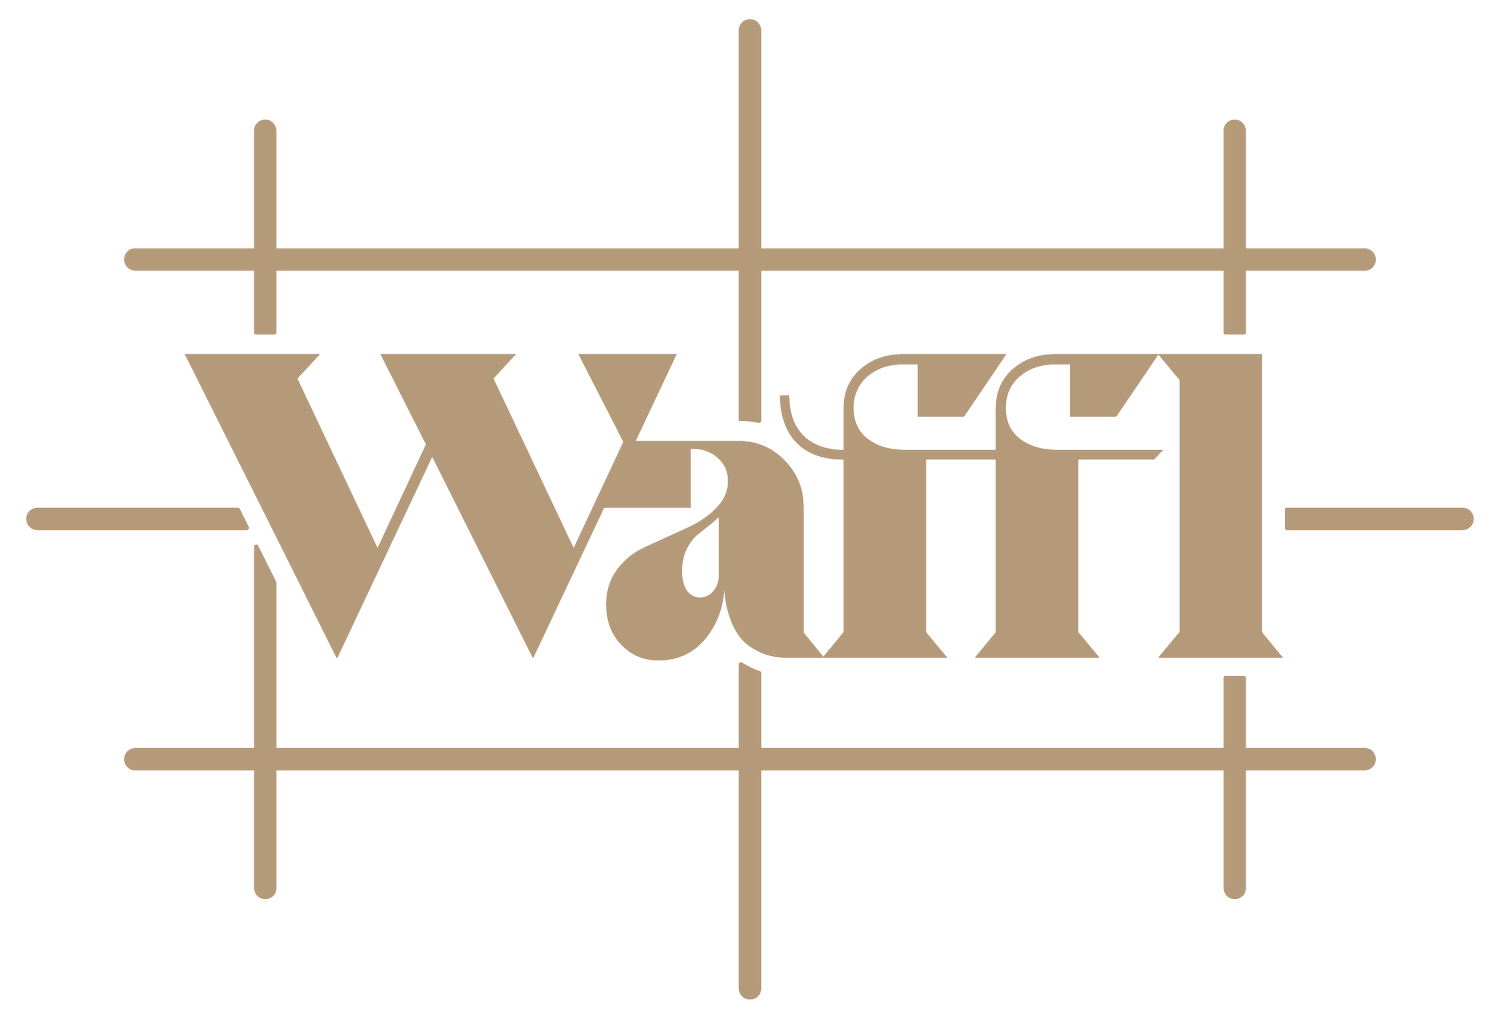 Waffl